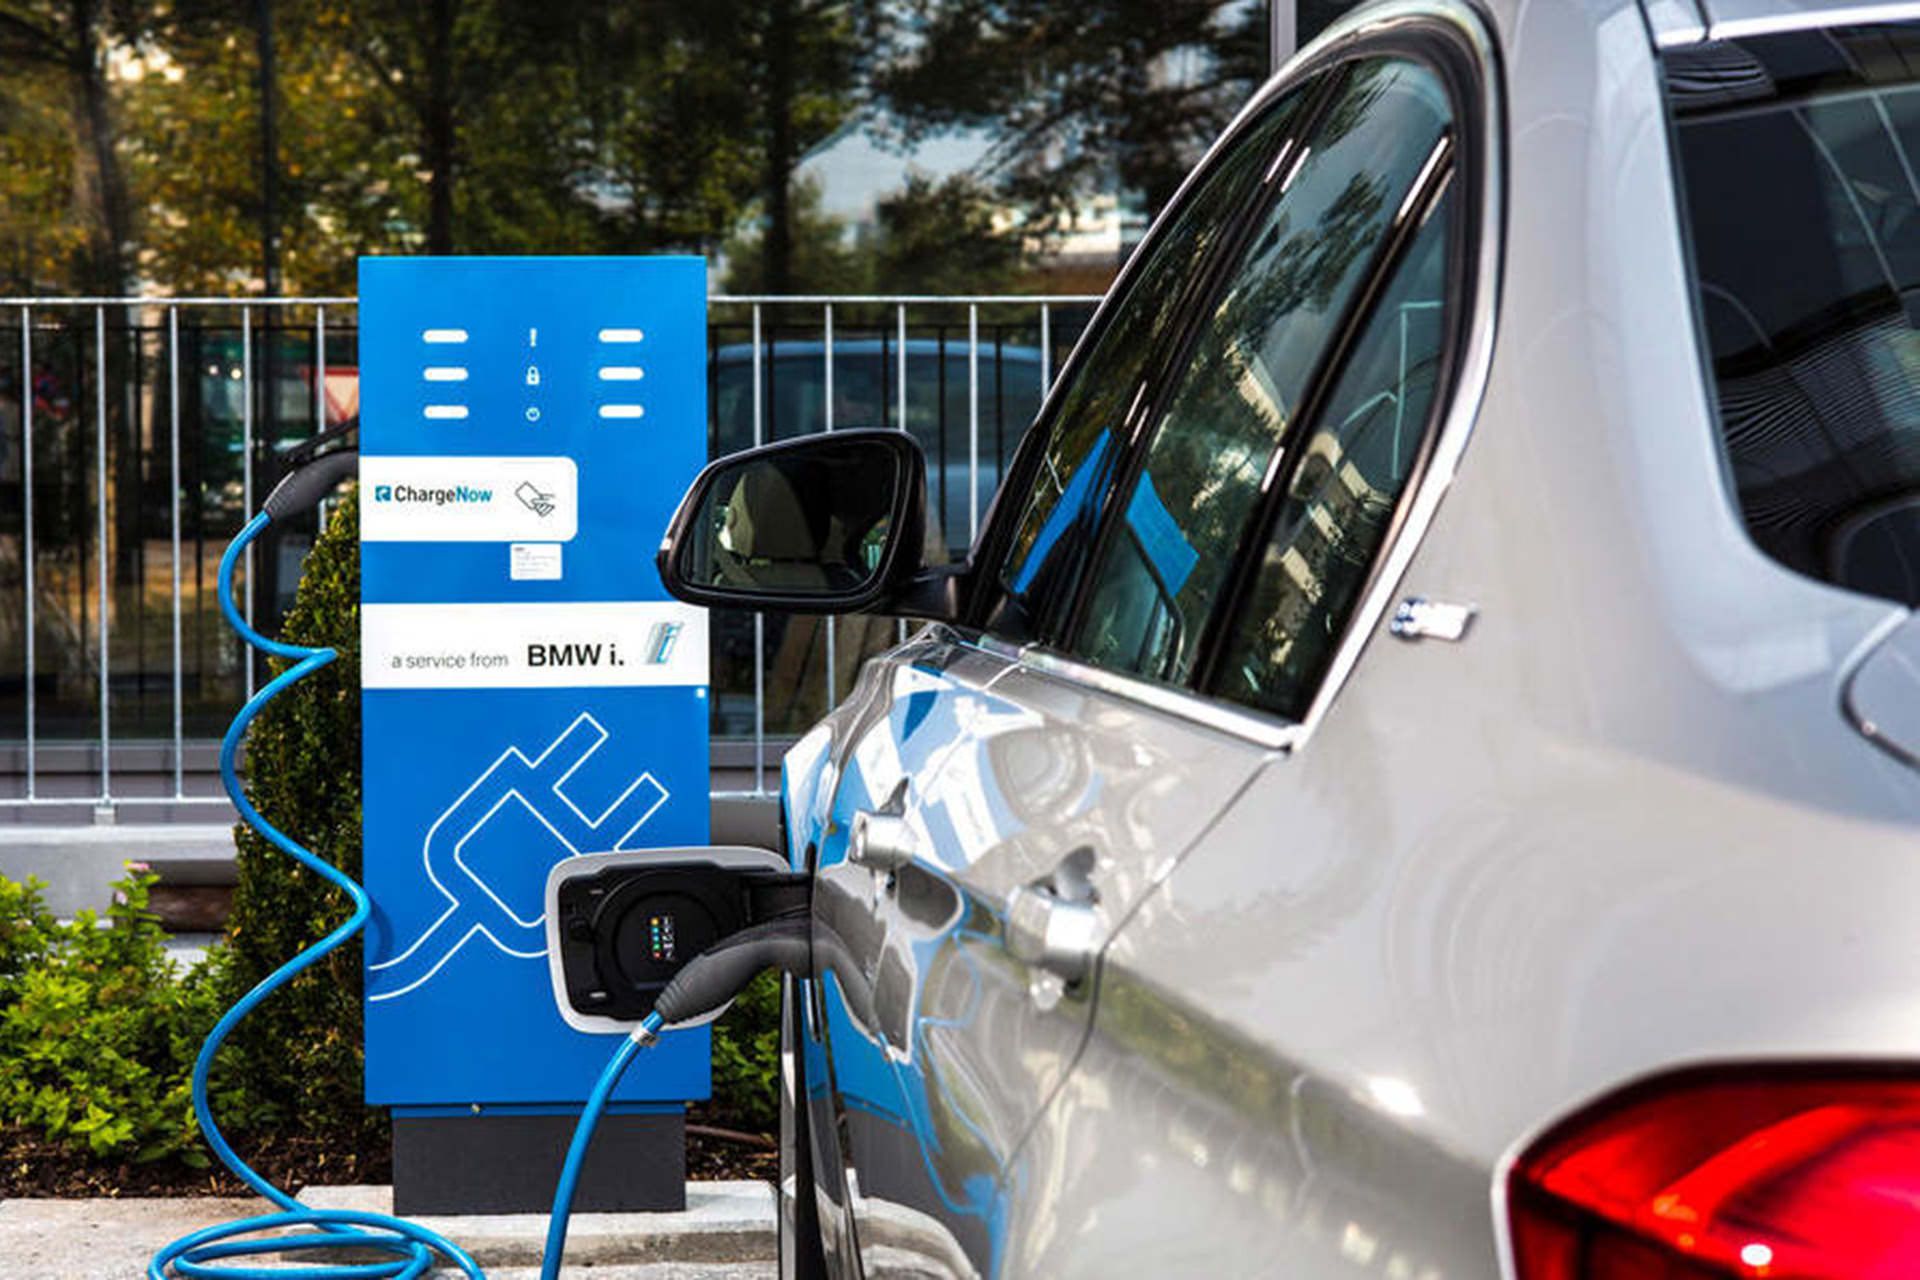 مرجع متخصصين ايران خودروي الكتريكي / Electric Car در حال شارژ در ايستگاه شارژ عمومي